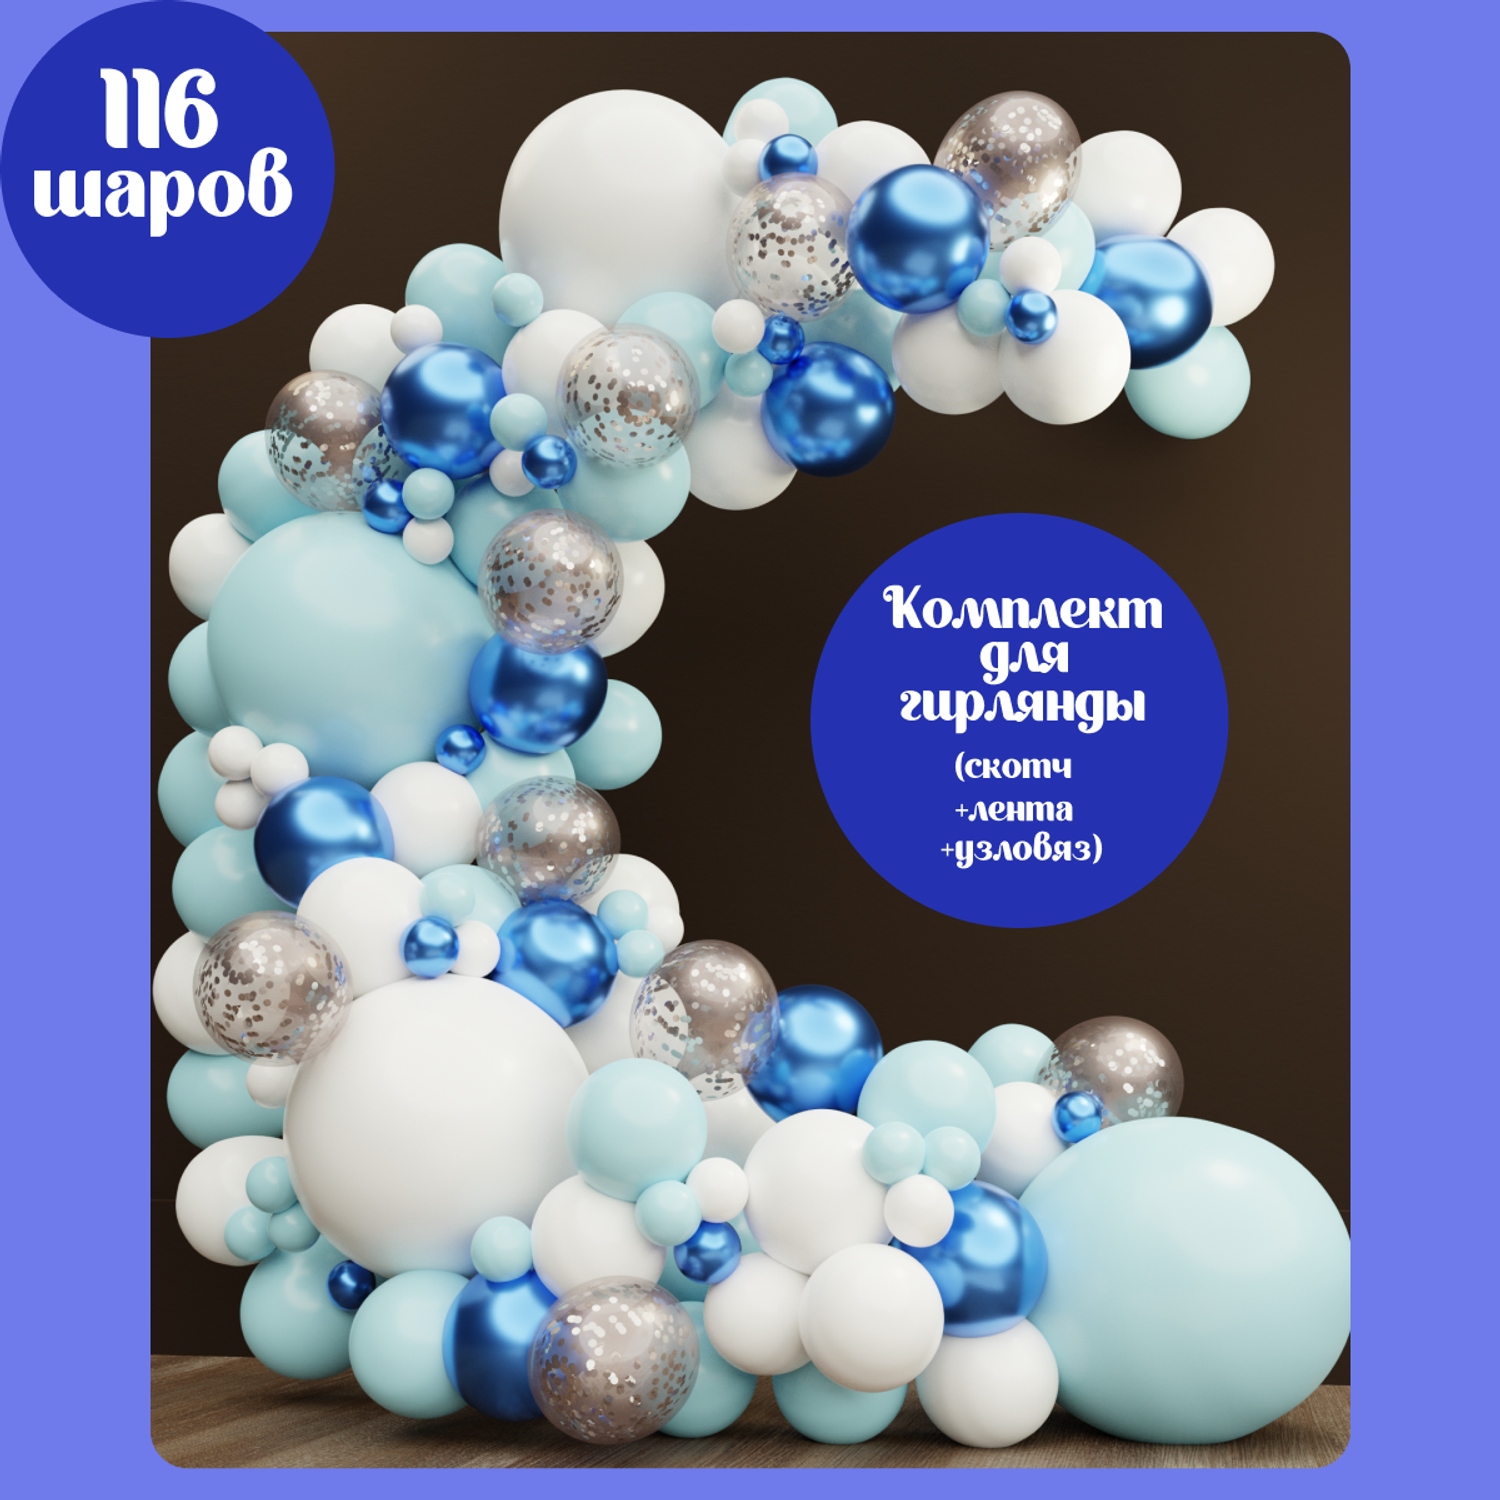 Купить Воздушные шары С днём рождения, Пожелания недорого в Москве